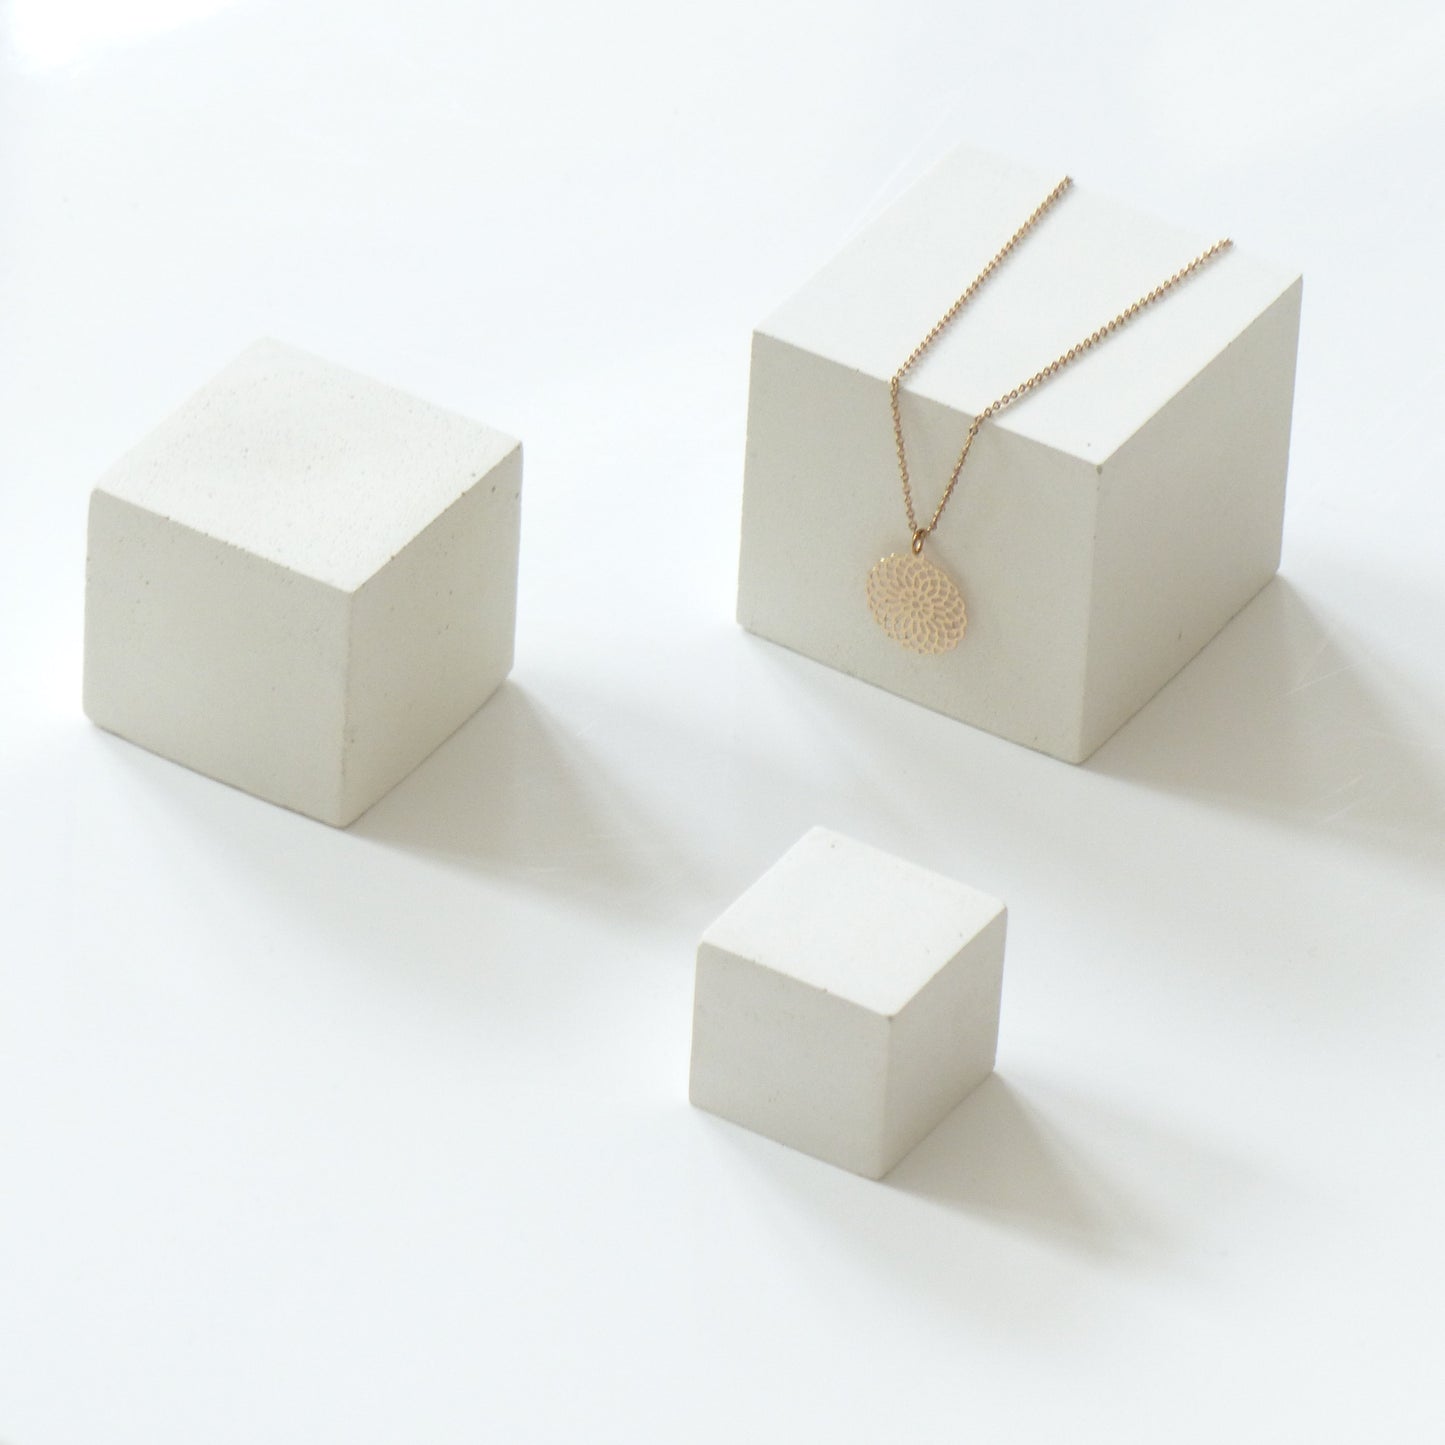 Three white concrete cubes